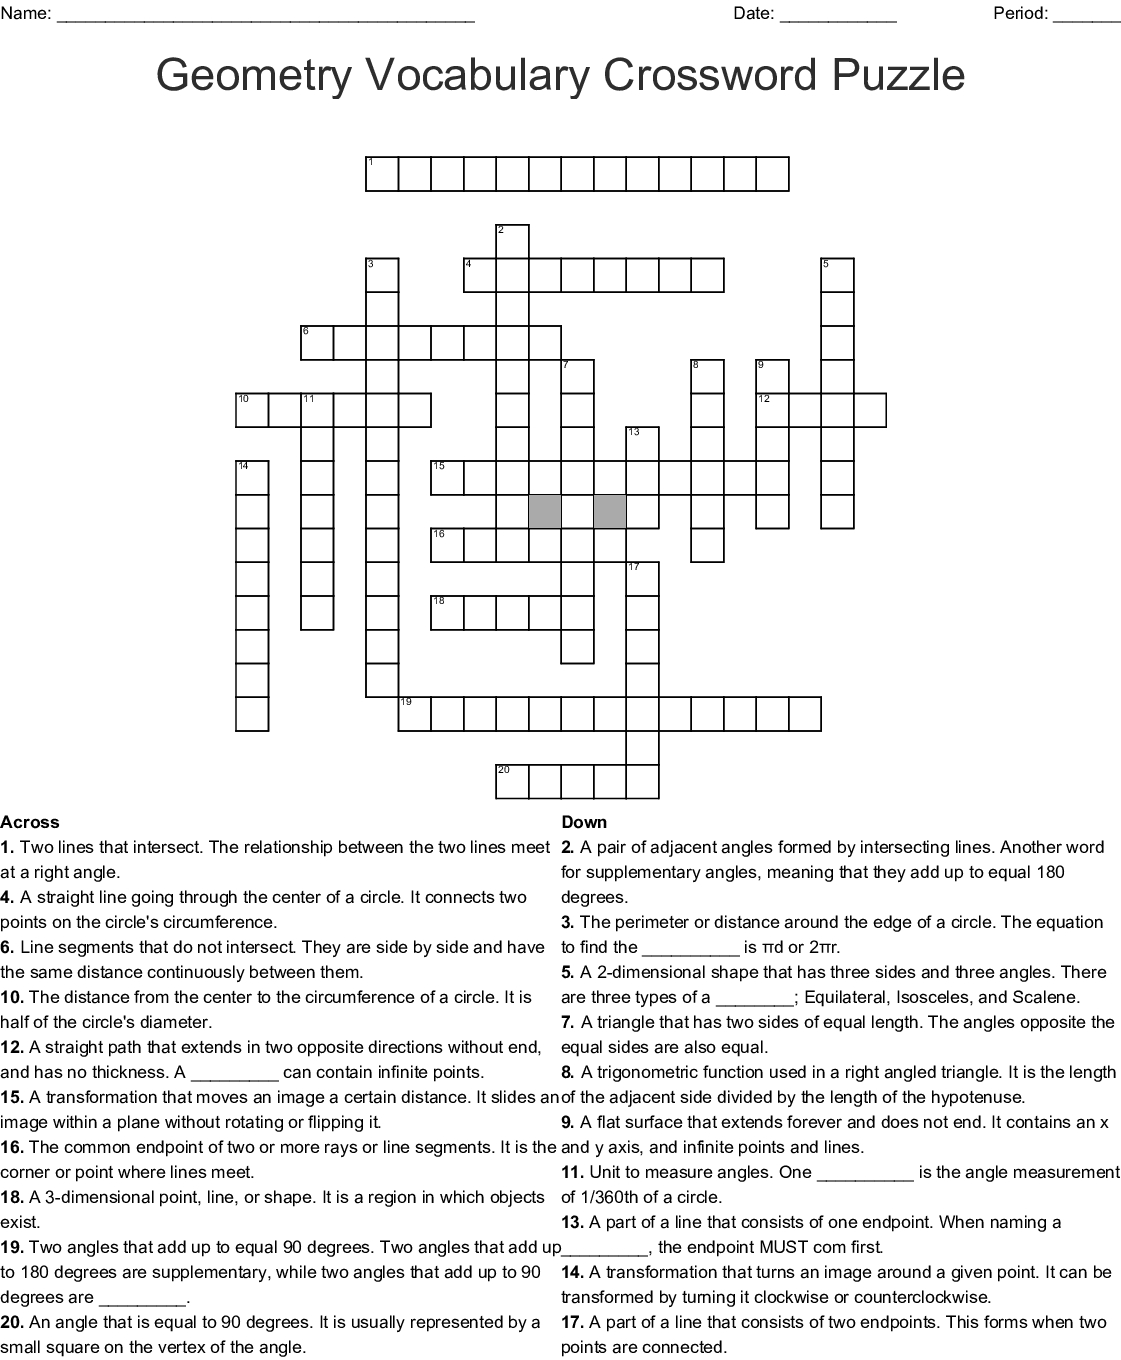 Geometry Vocabulary Crossword Puzzle Crossword - Wordmint - Geometry Vocabulary Crossword Puzzle Printable